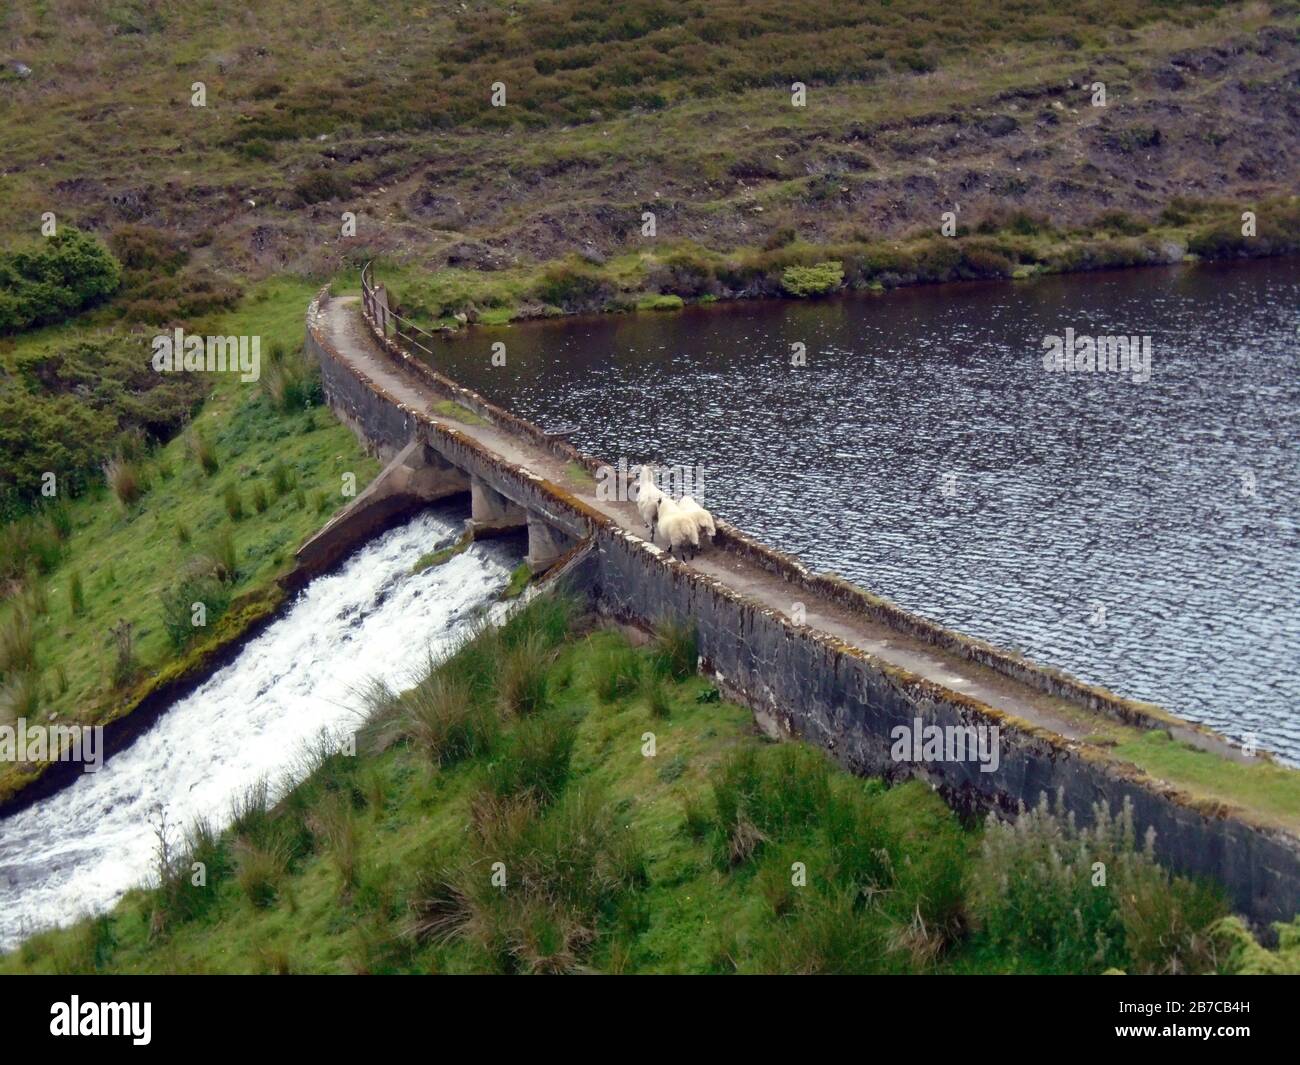 La presa Weir y Little Reservoir cerca de Inchmore Bothy en la ruta a la montaña escocesa Corbett 'Brown Cow Hill' cerca de Ballater, Deeside, Escocia, Reino Unido. Foto de stock